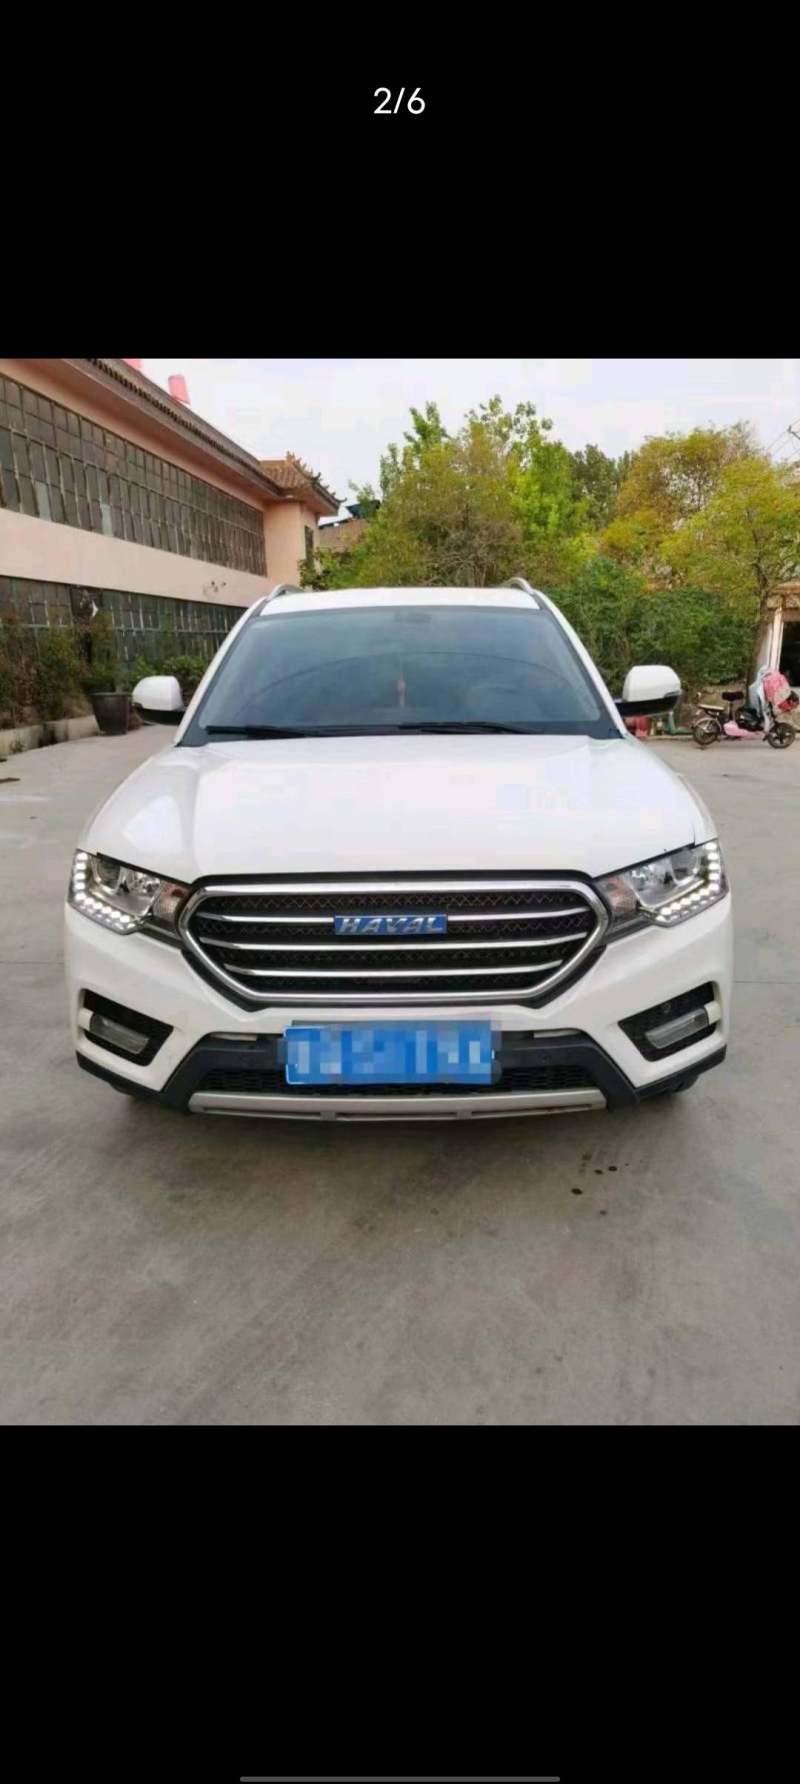 河南省郑州市抵押车交易市场